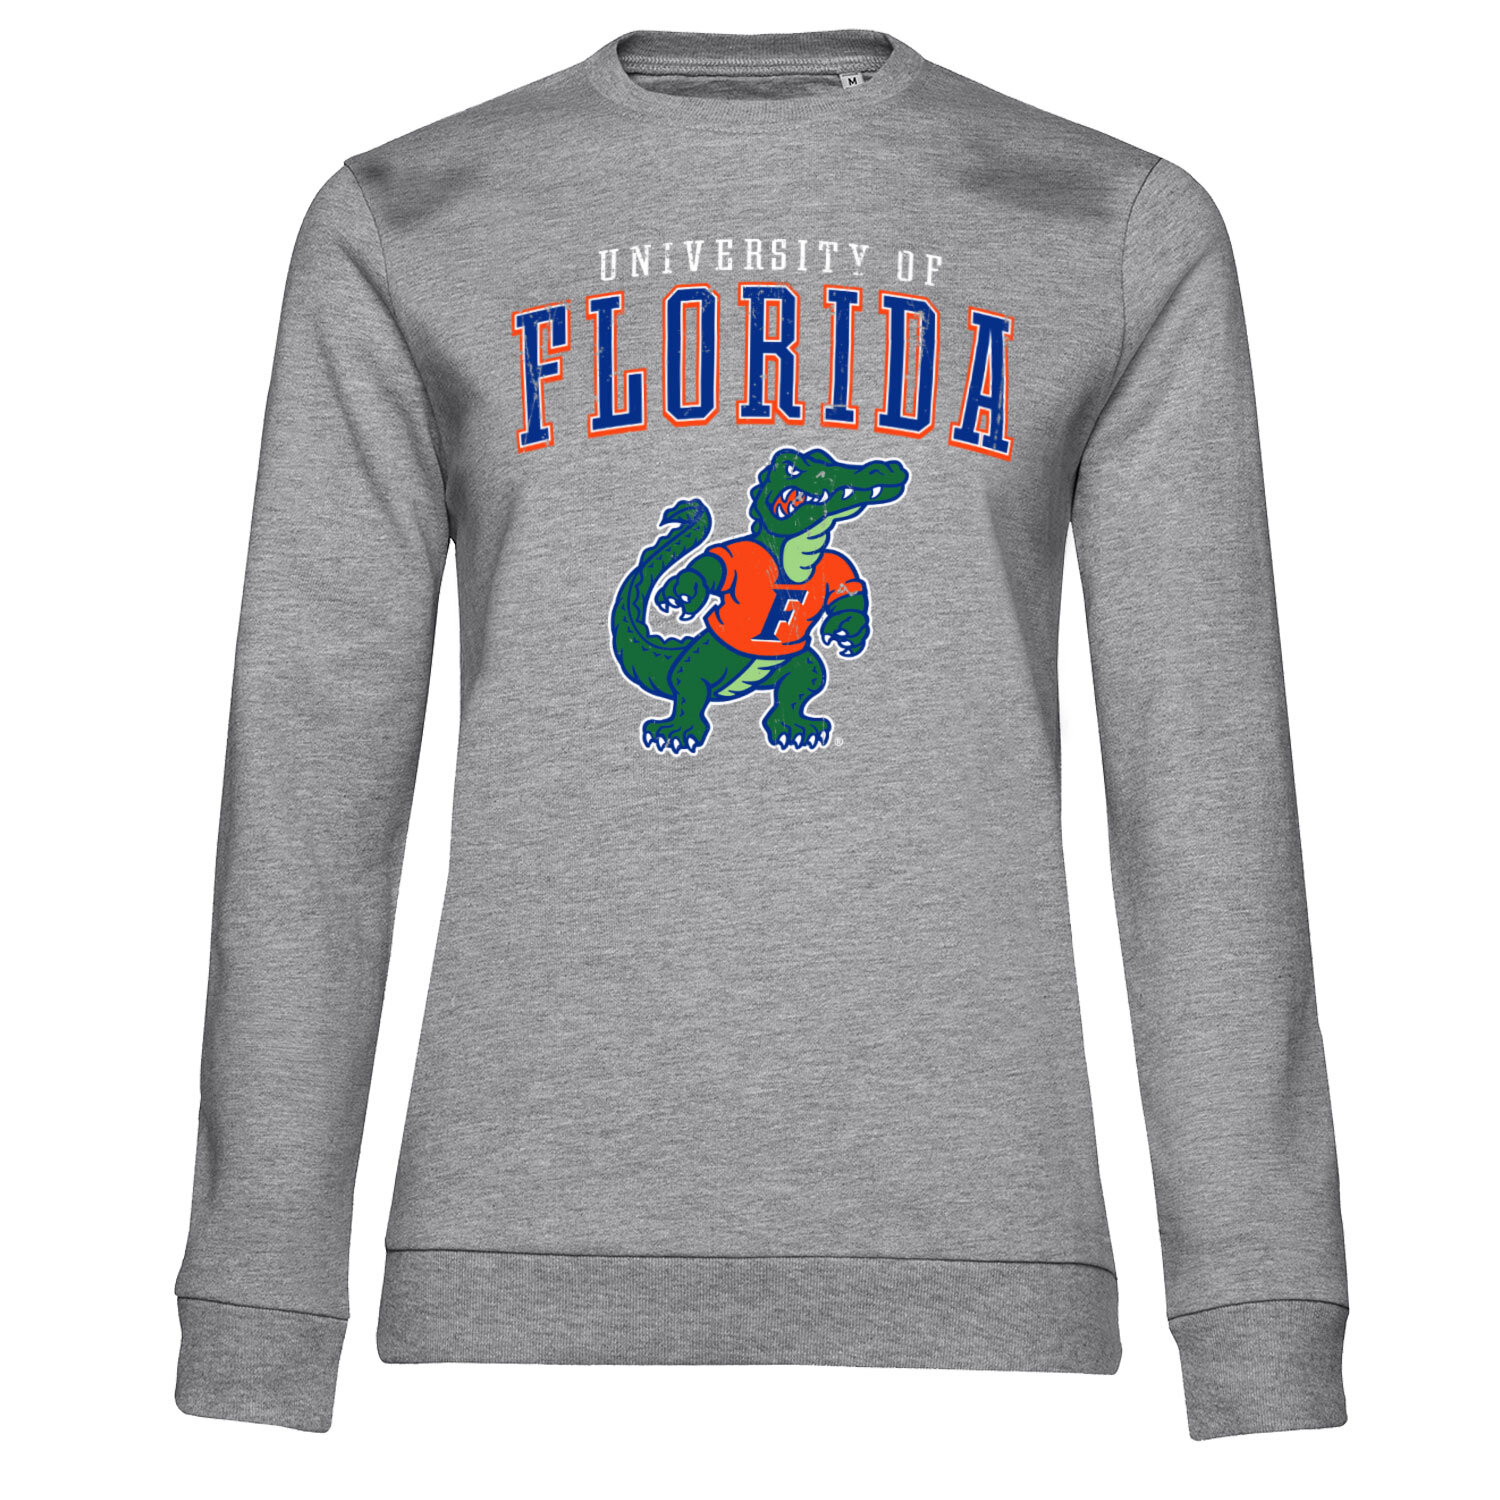 University Of Florida Girly Sweatshirt